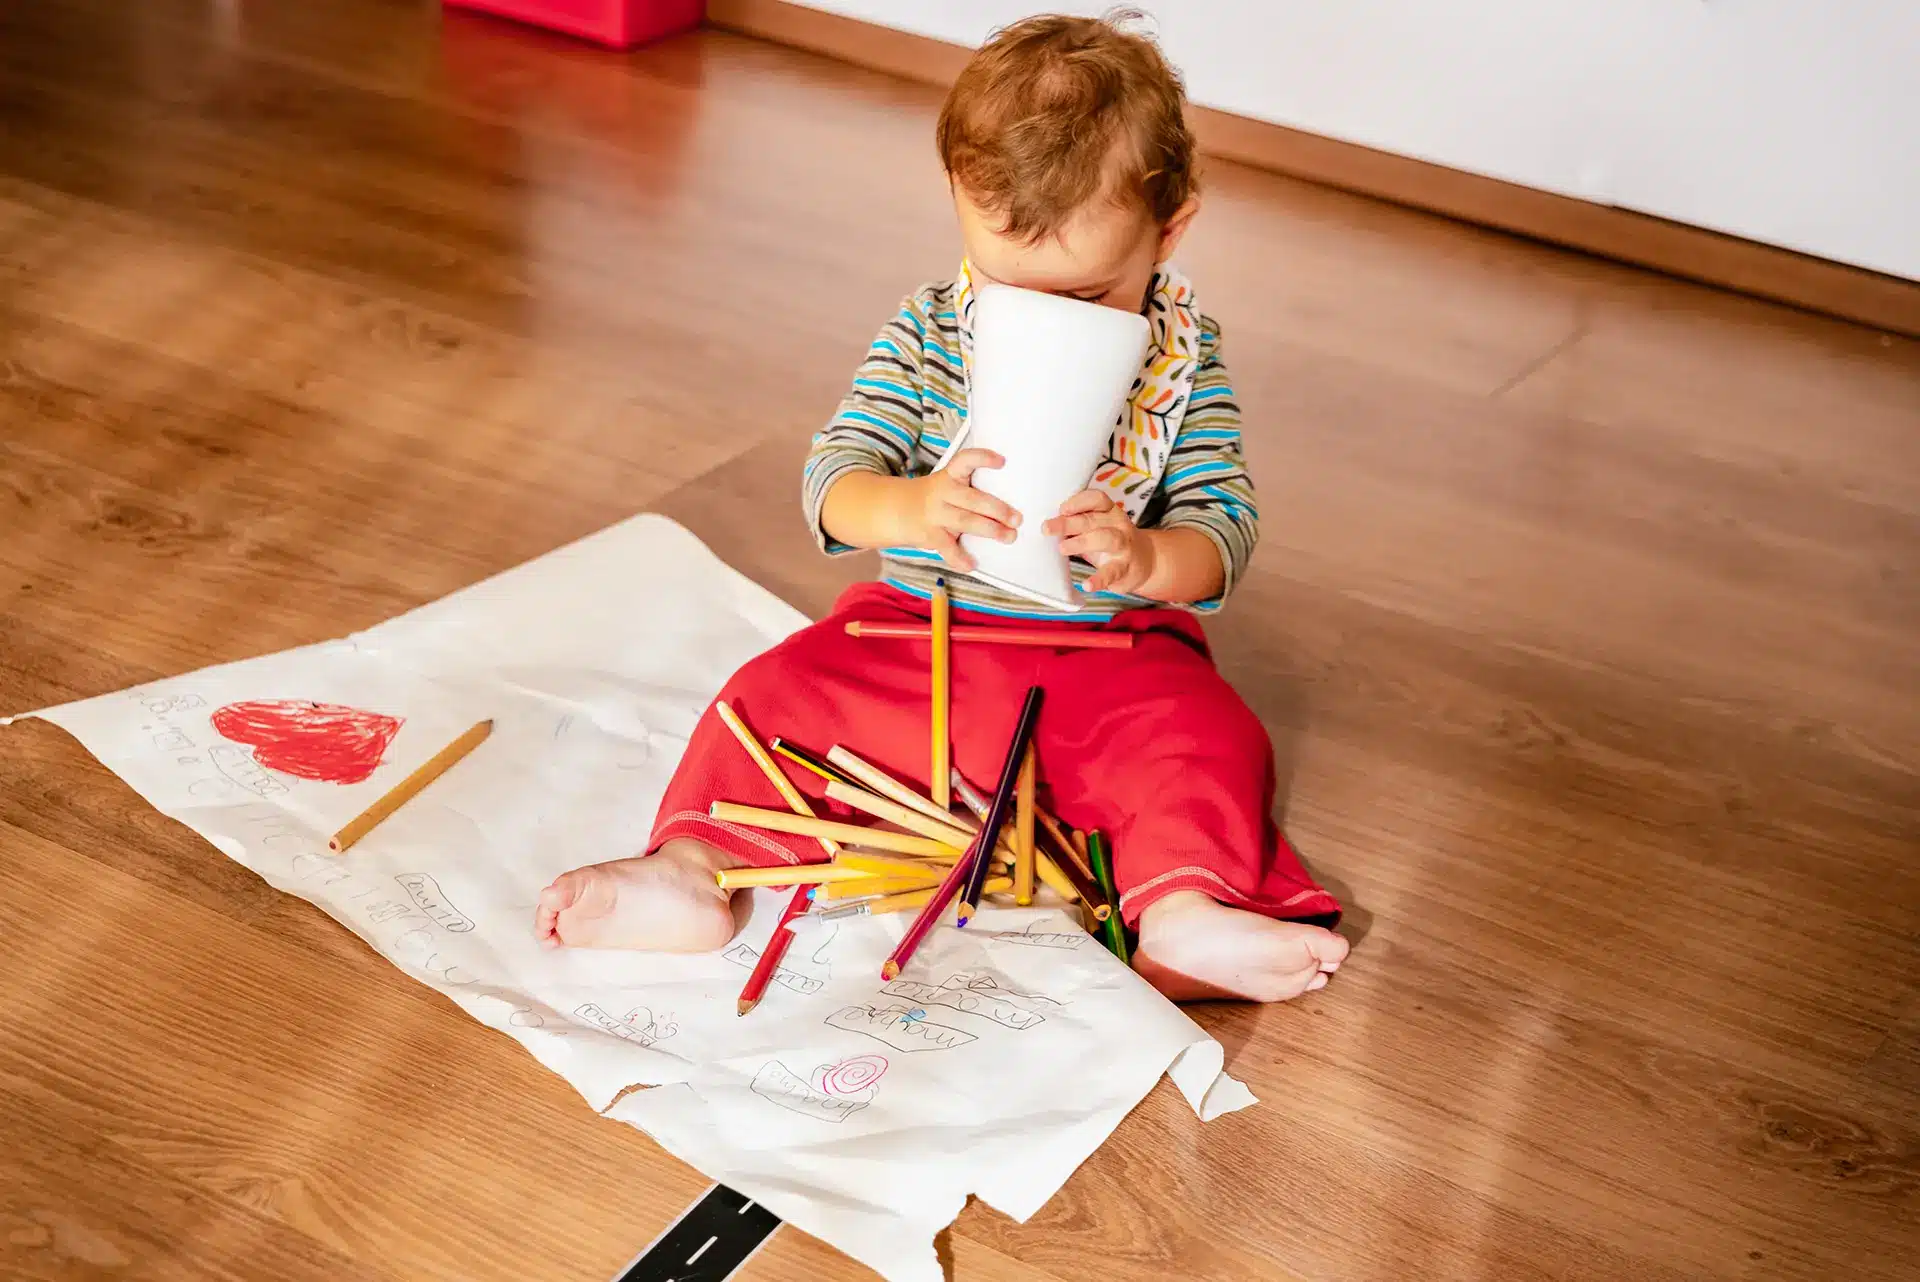 Ein einjähriges Baby spielt mit Stiften auf einem Holzfußboden.